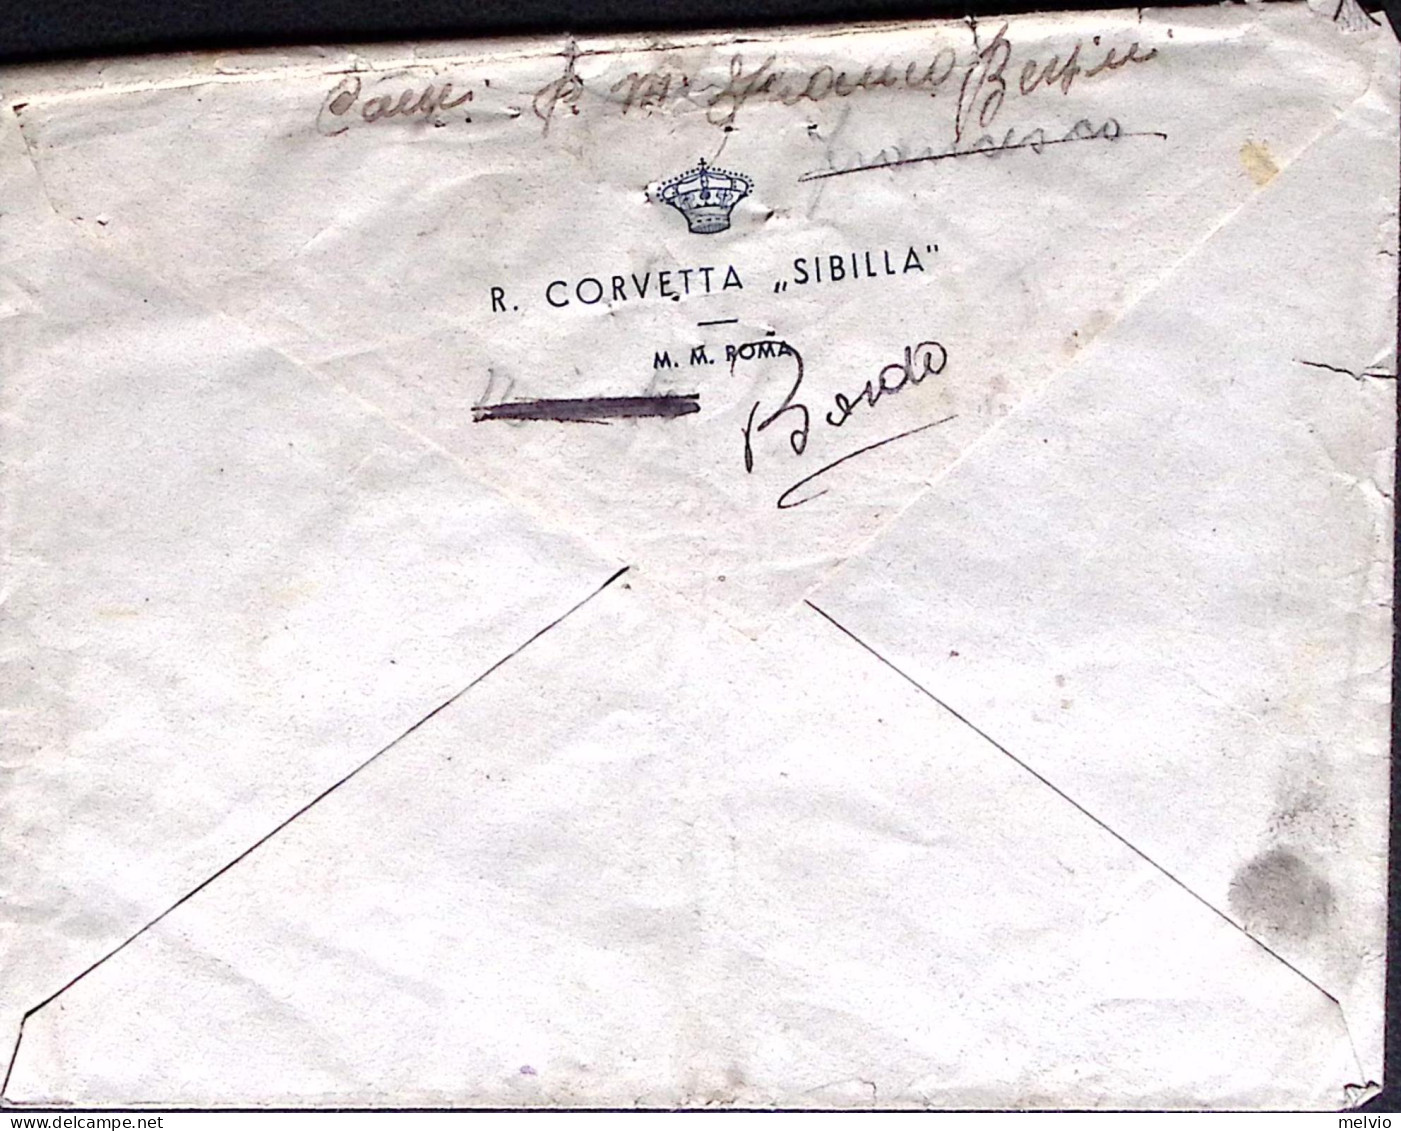 1943-R. CORVETTA SIBILLA tondo unico annullatore busta affrancata Imperiale c.50